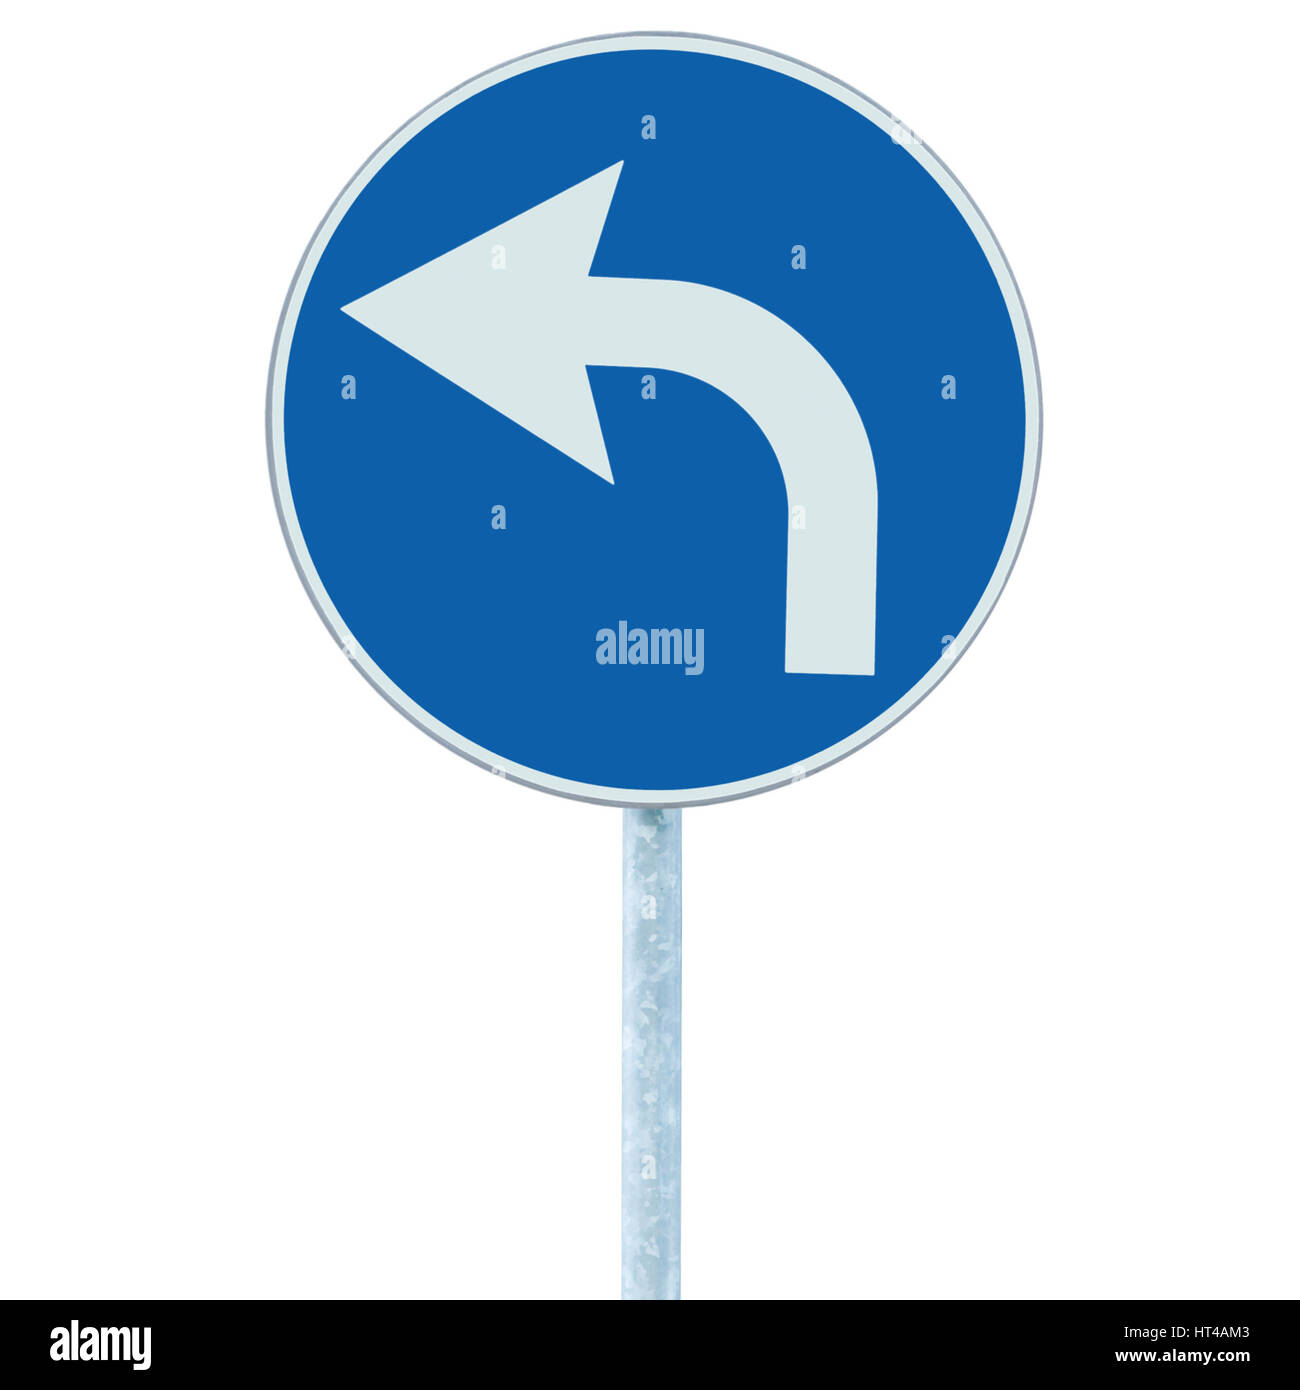 Знак со стрелкой на синем фоне. Дорожные знаки на синем фоне. Дорожные знаки со стрелками. Дорожные знаки синие круглые. Дорожный знак стрелка.